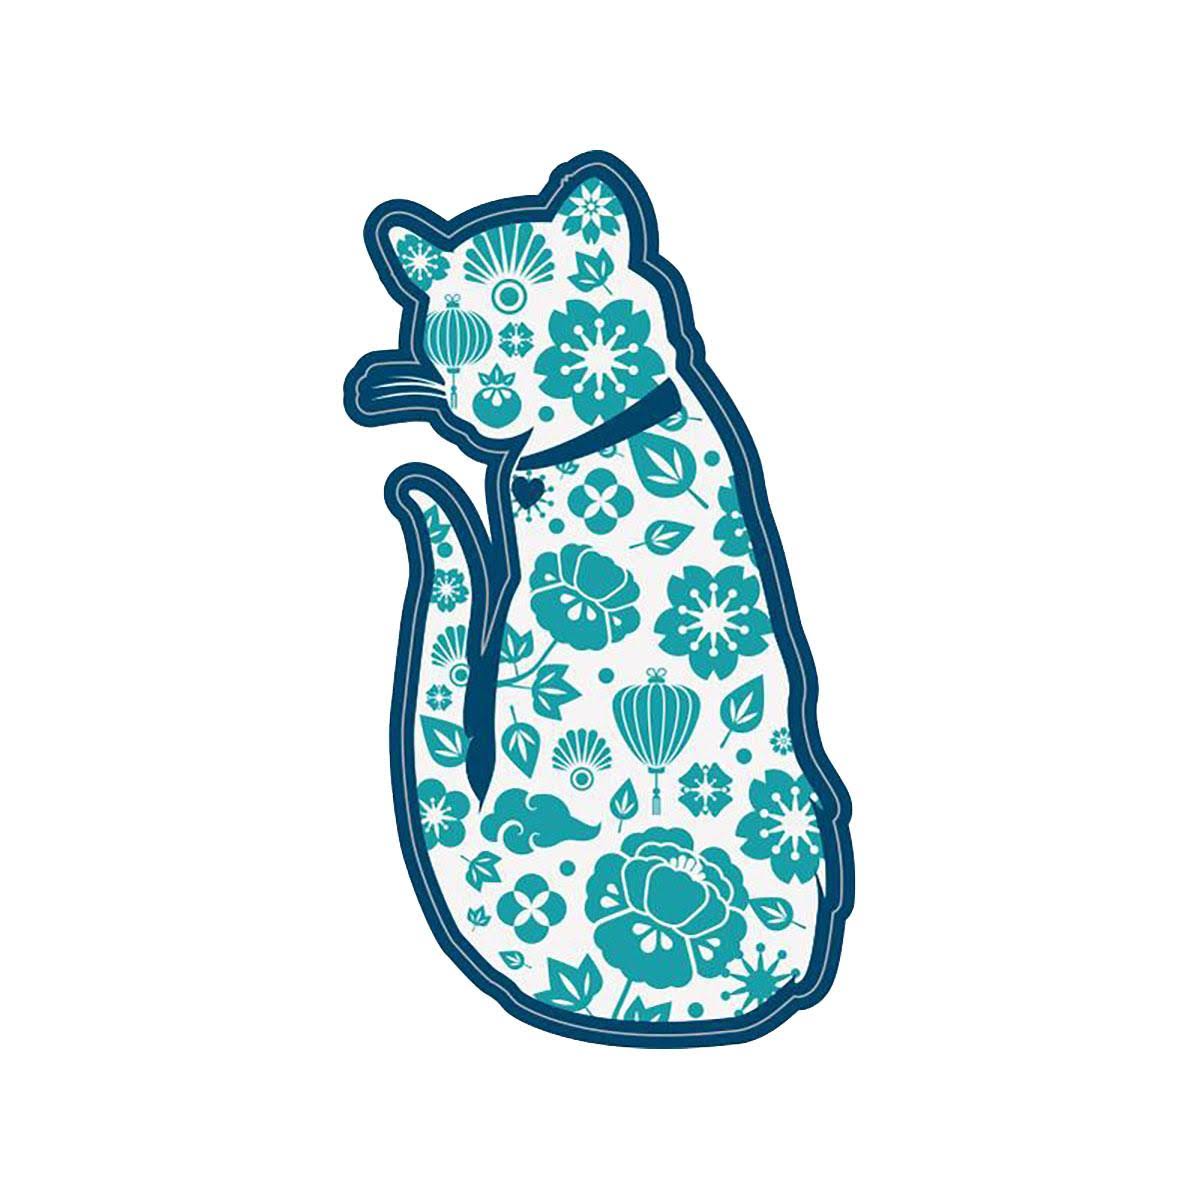 Cat Figure Sticker by Dog Speak - 3" Sticker